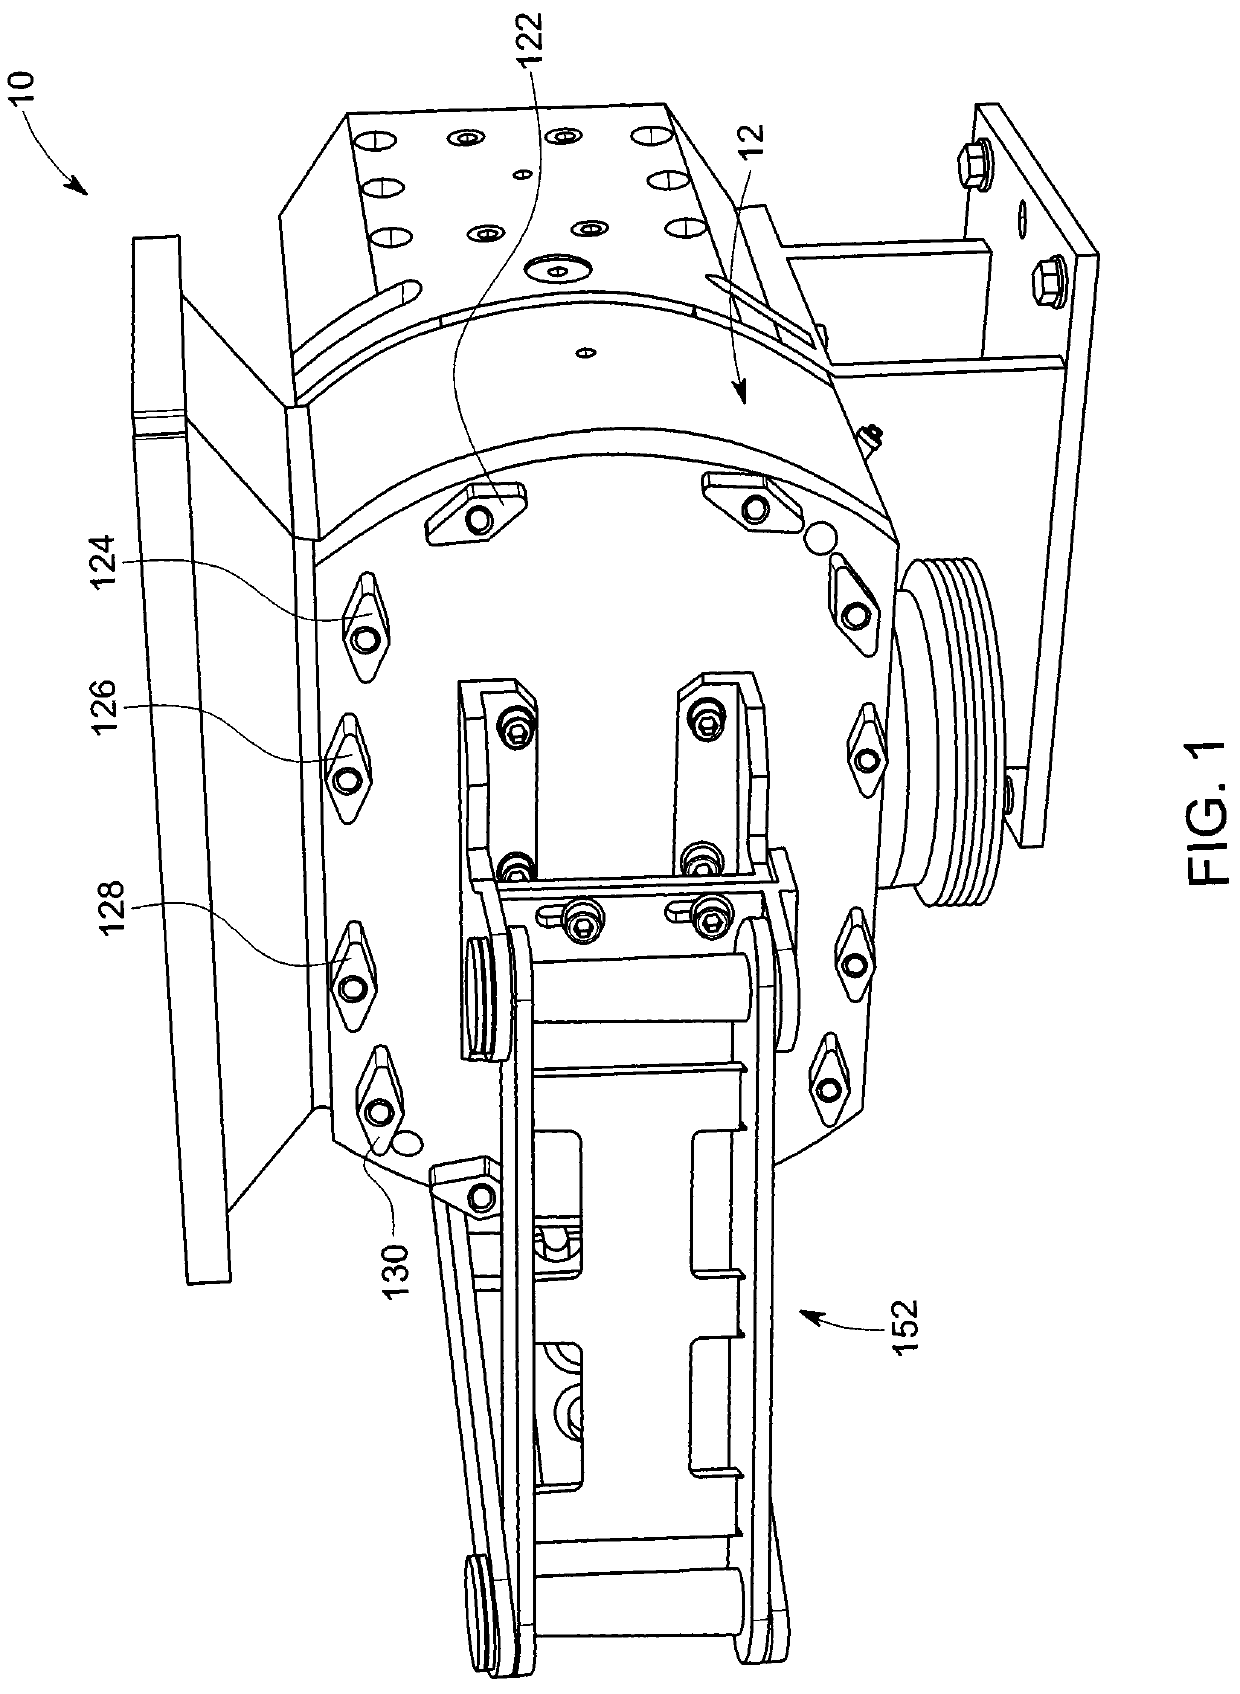 Rotary pump with rotor bearing ring